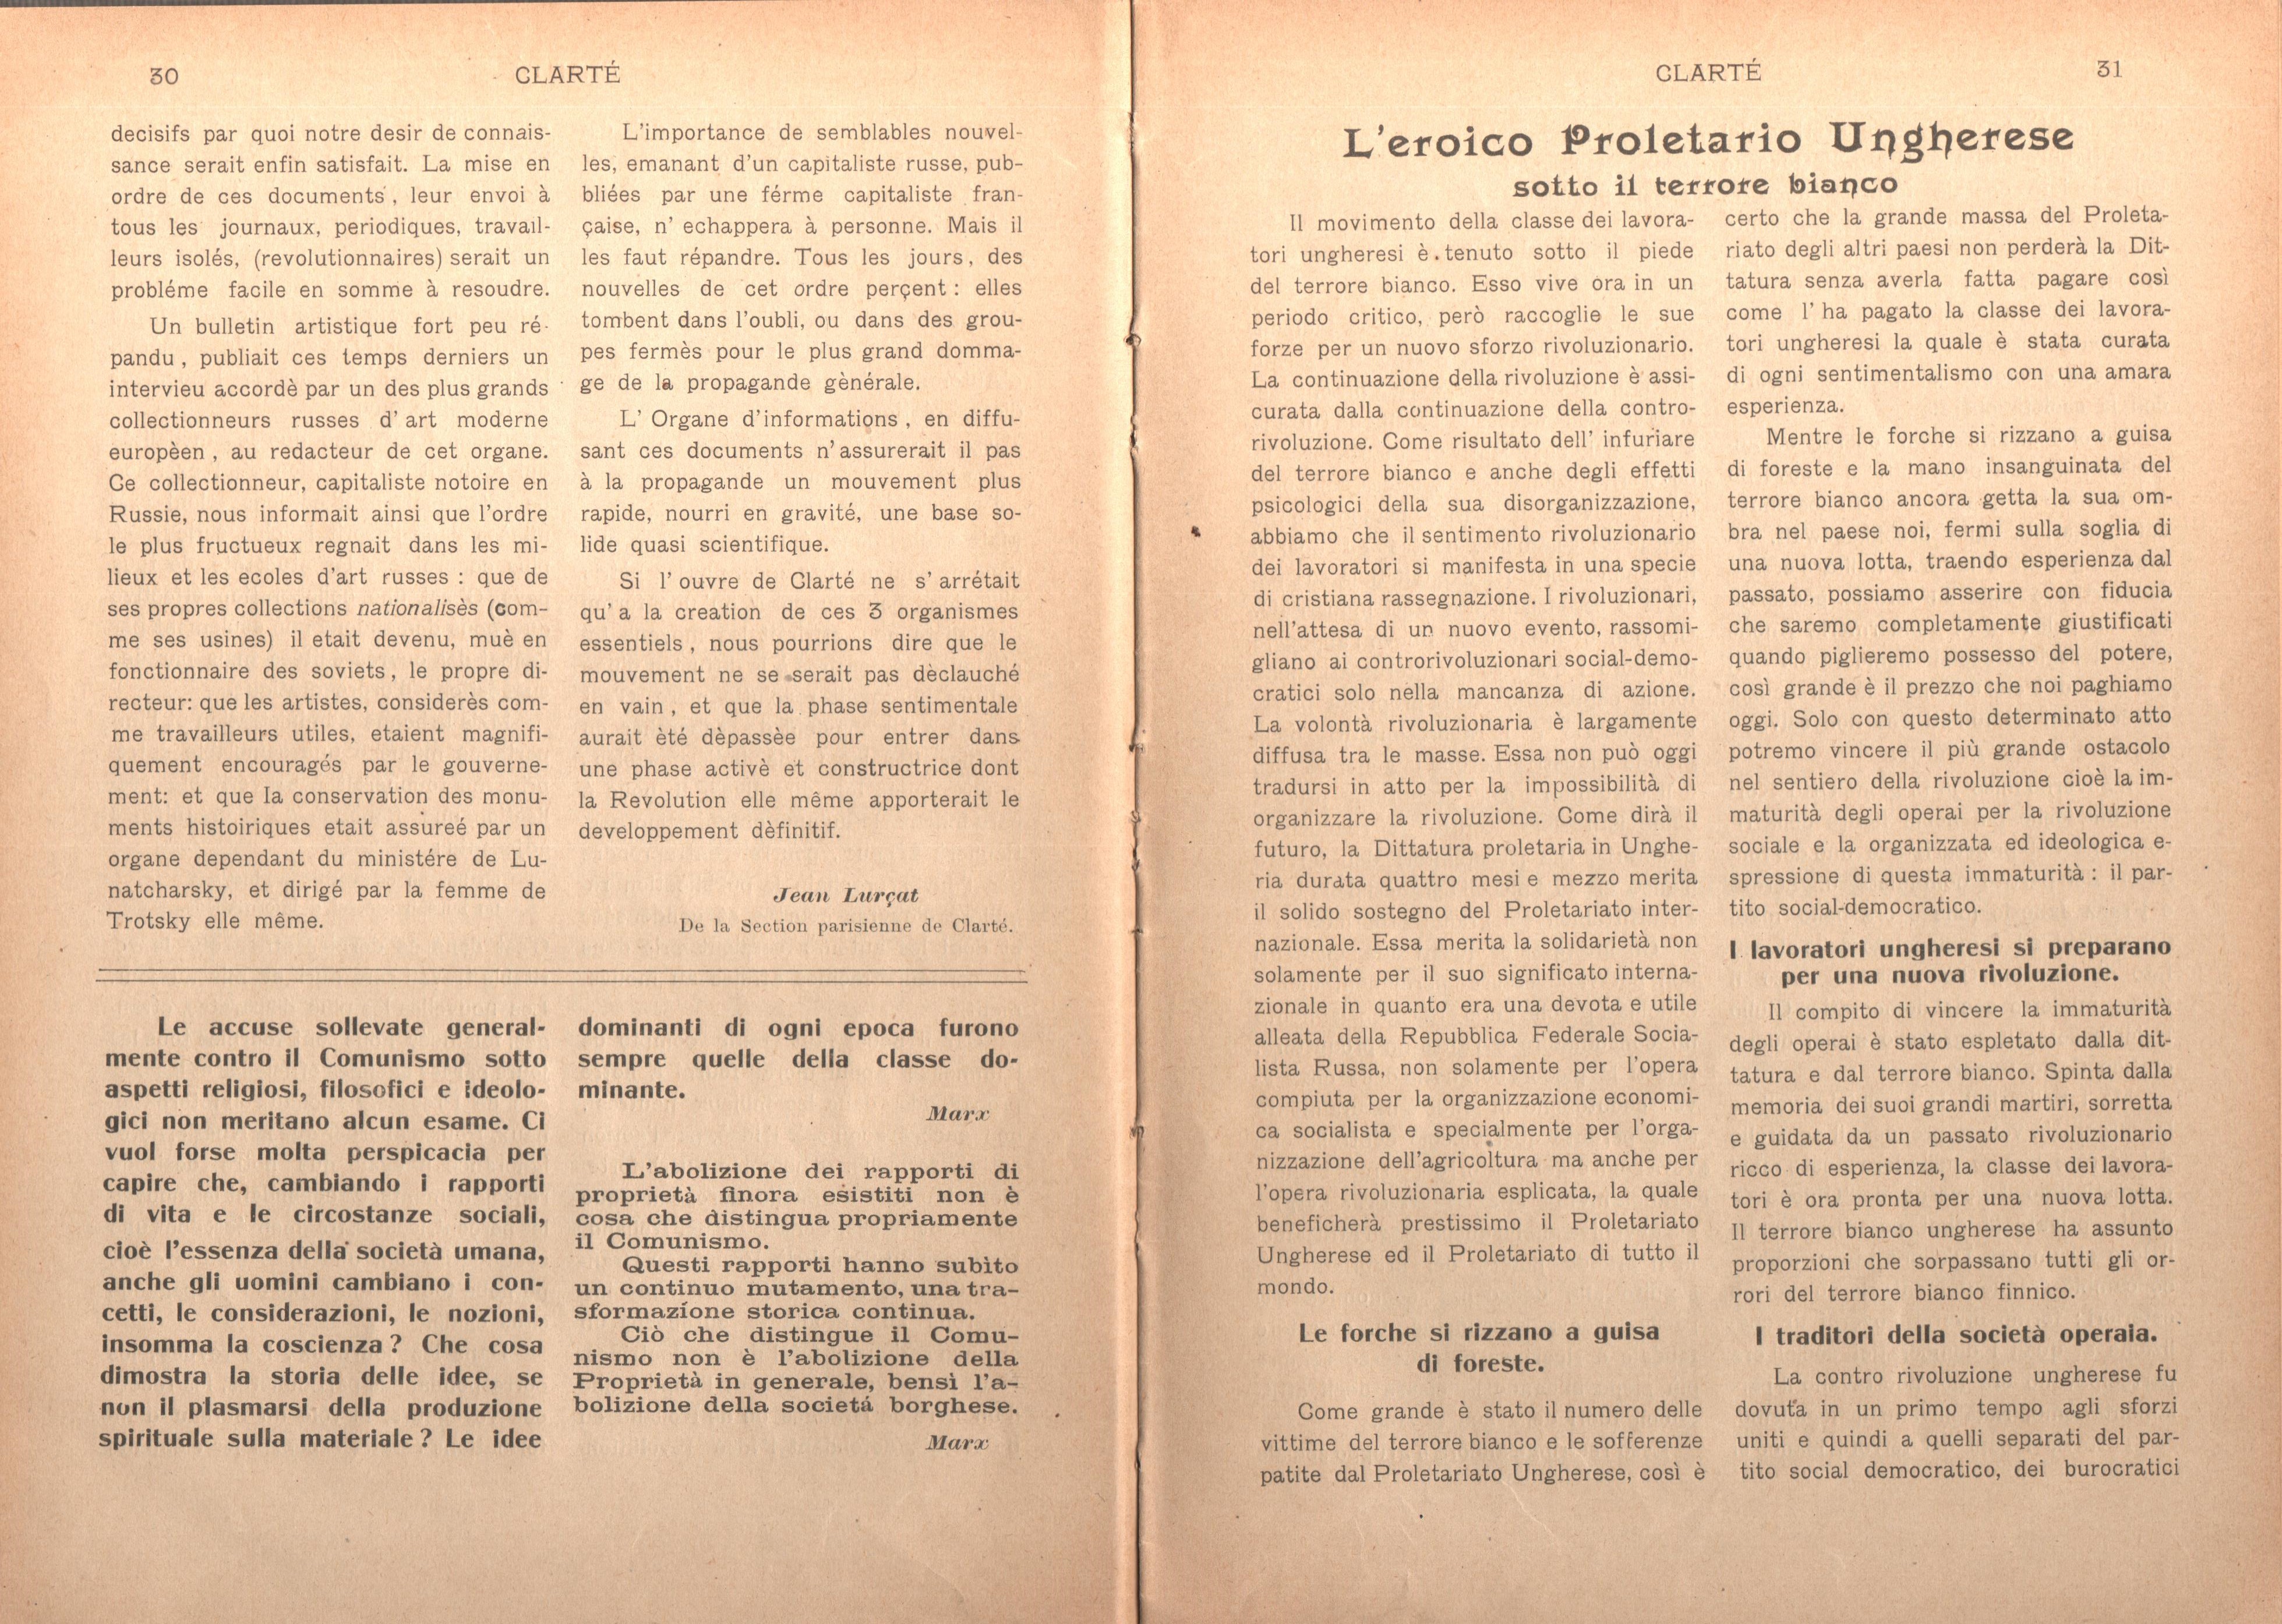 Clarté. Rivista mensile degli studenti comunisti (a. I, n. 2, Palermo, 15 giugno 1920) - pag. 5